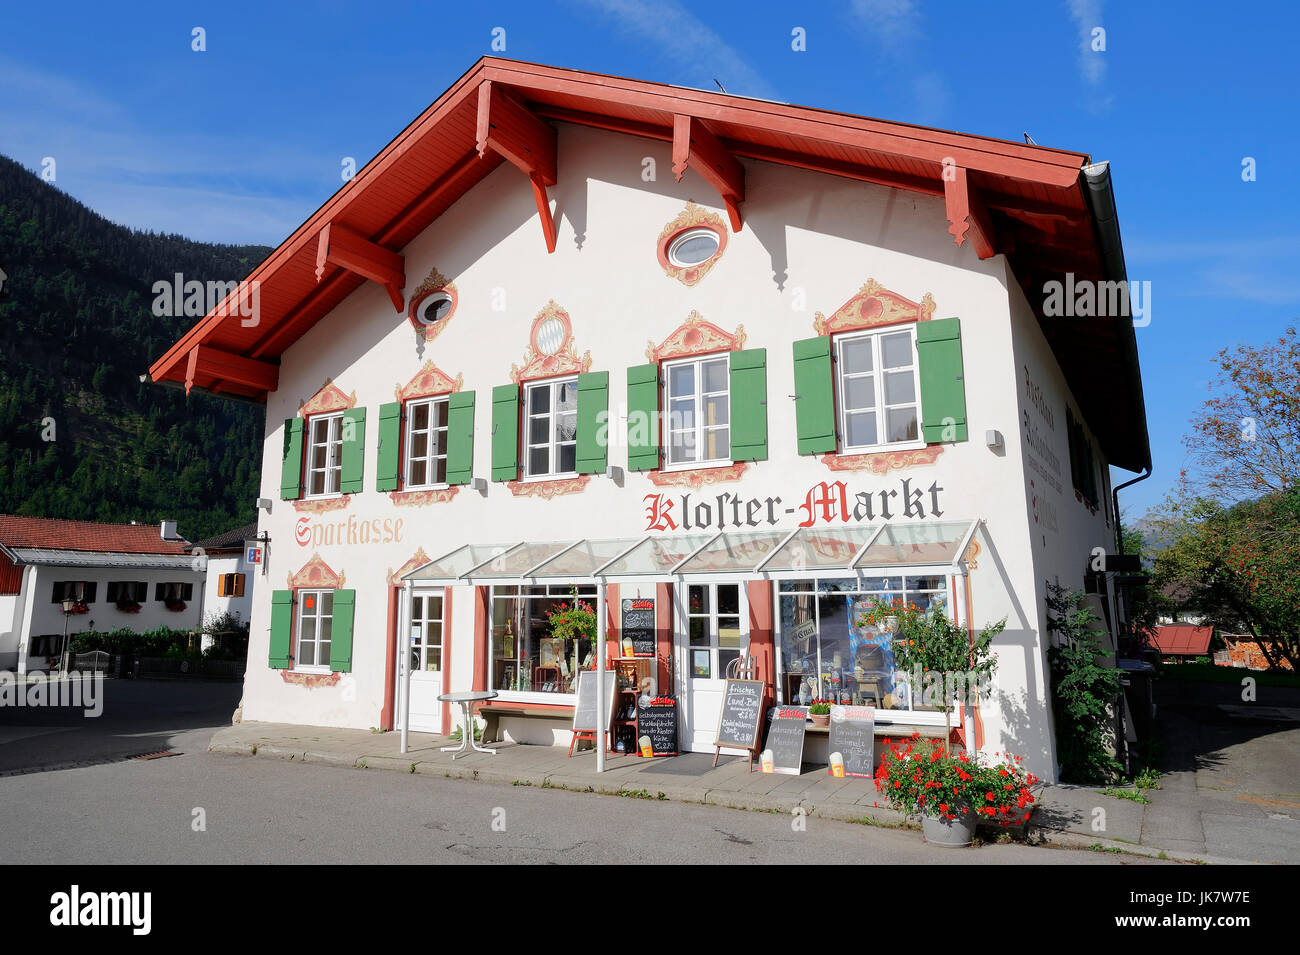 Shop 'Kloster-Markt', Ettal, Baviera, Alemania / monasterio mercado | Geschaeft 'Kloster-Markt', Ettal, Bayern, Deutschland Foto de stock